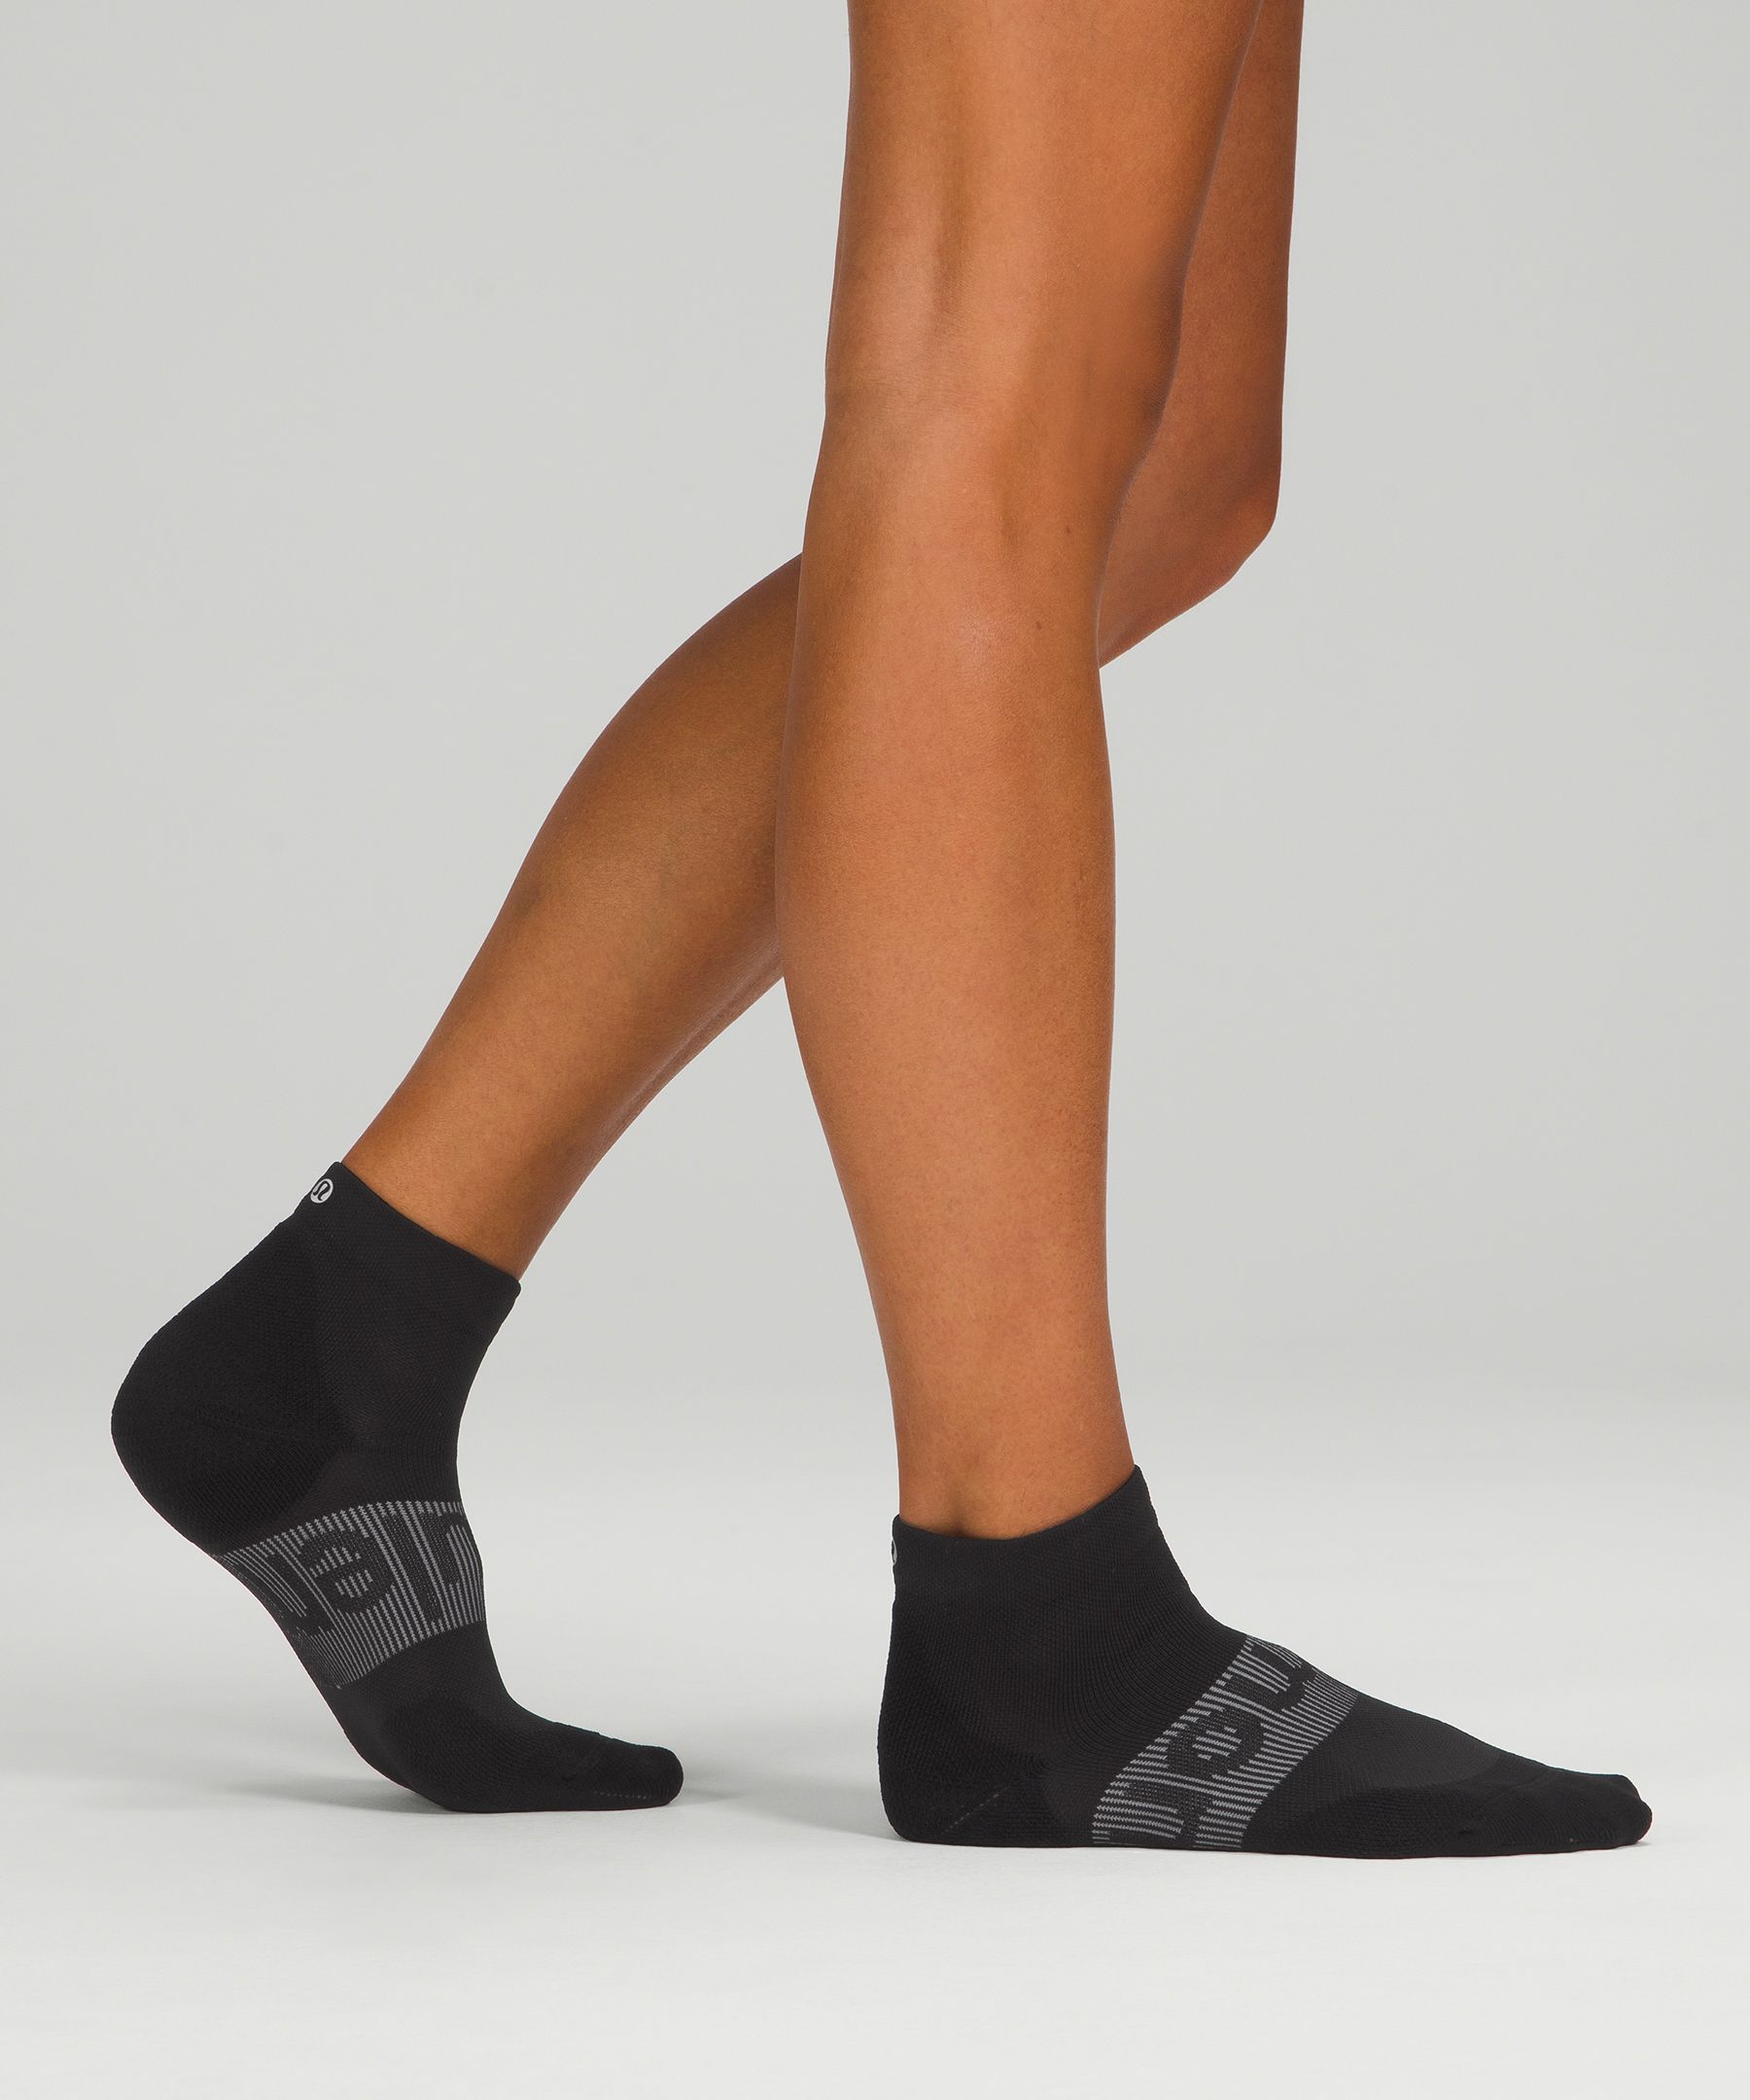 Women's Power Stride Ankle Socks *3 Pack, Women's Socks